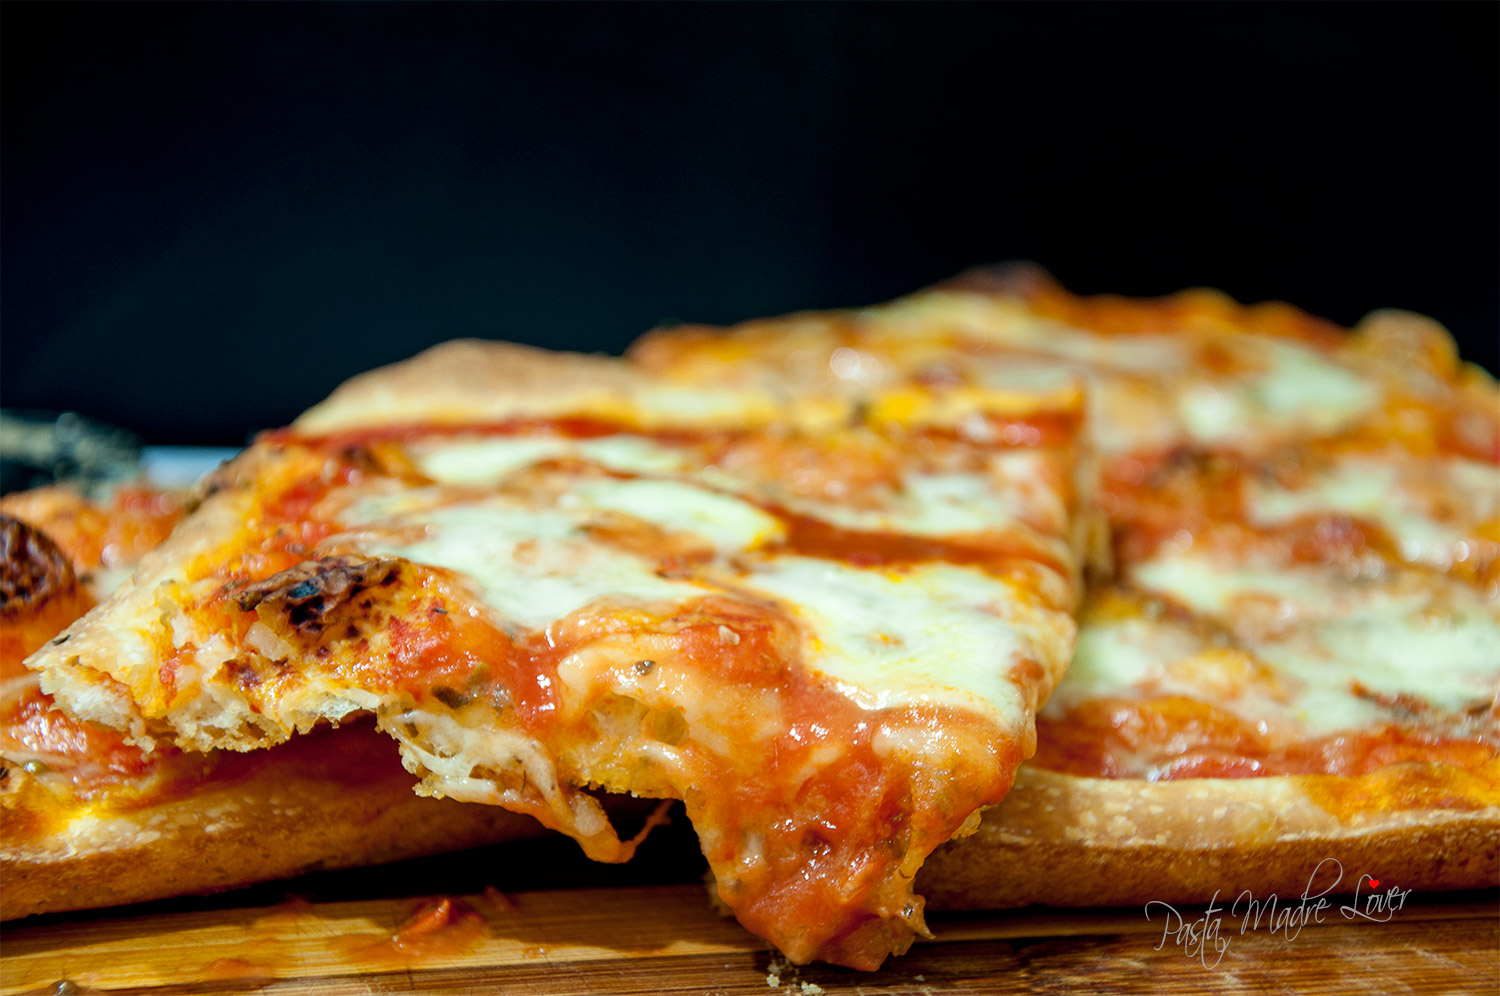 Thumbnail for Pizza in teglia classica, famosa come “La zozza campana”